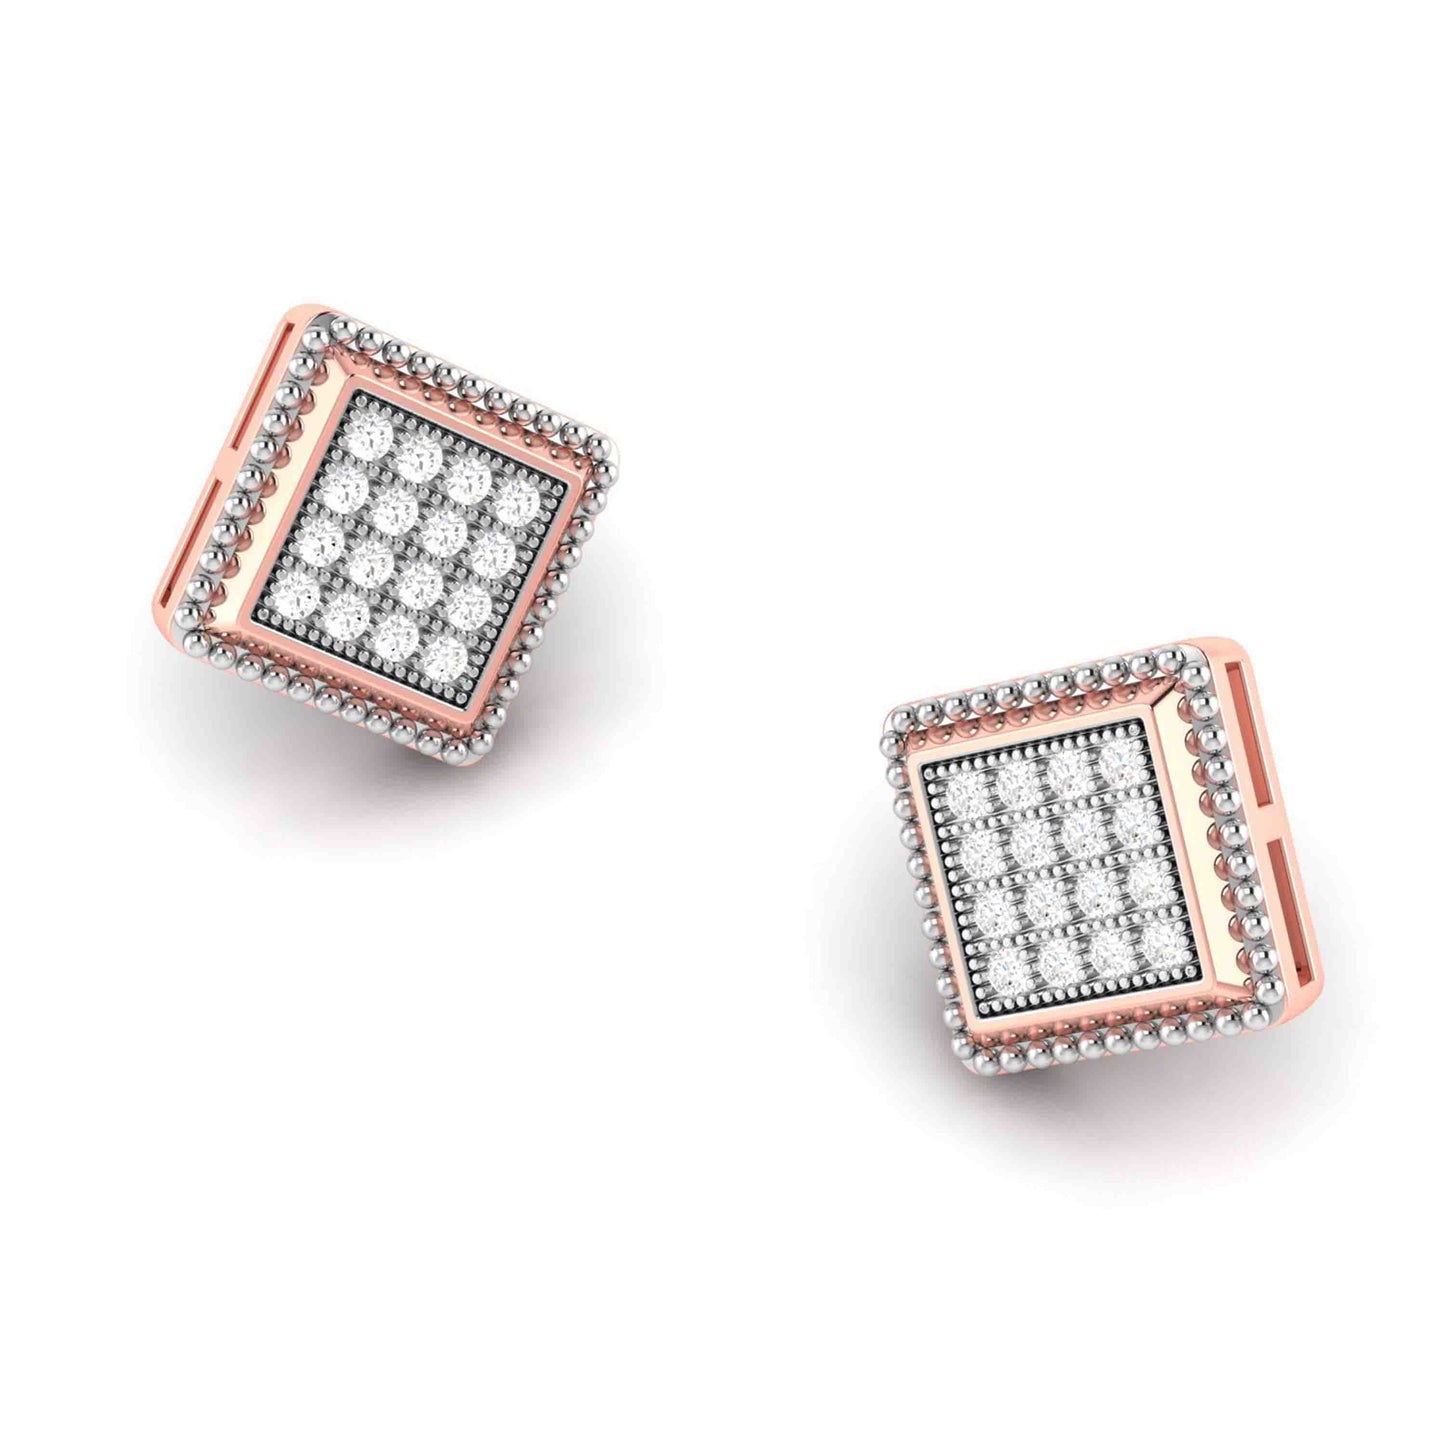 Fancy earrings design Kare Lab Grown Diamond Earrings Fiona Diamonds